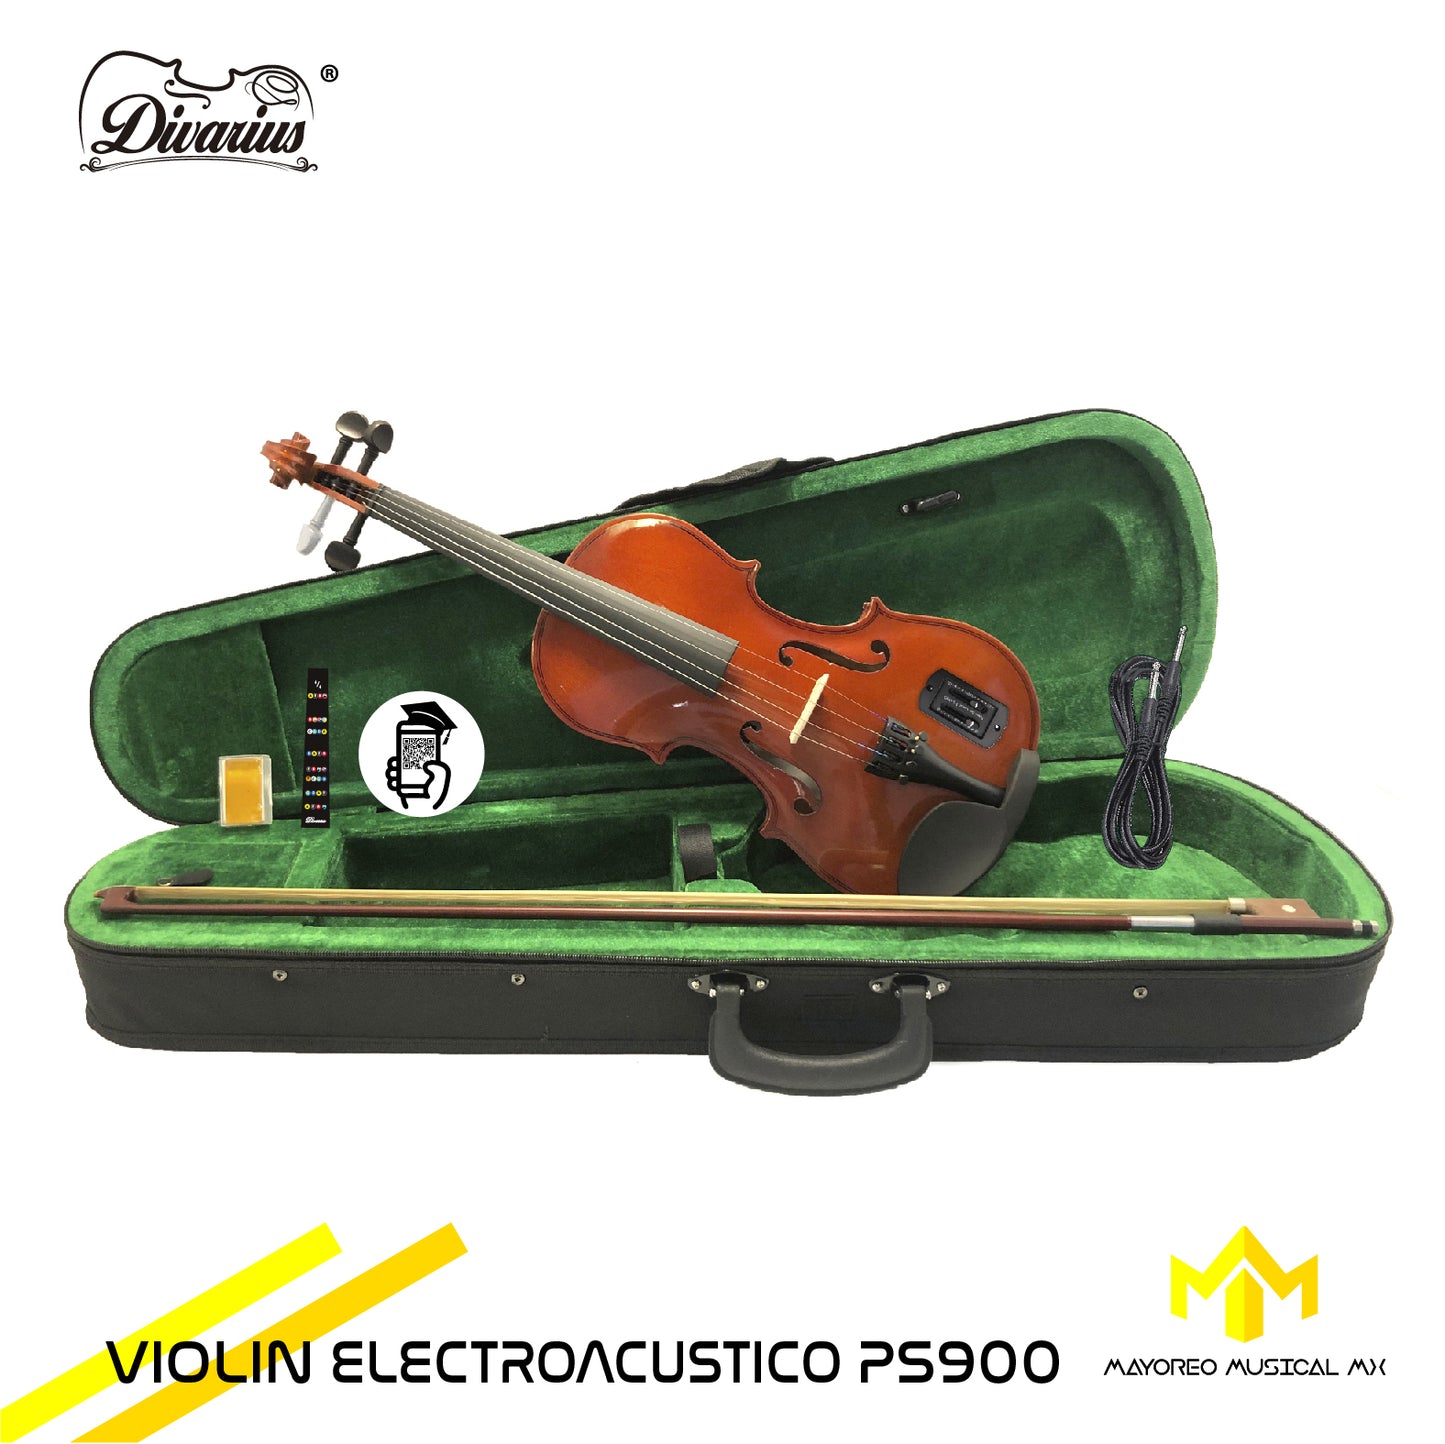 Violin Electroacustico PS900 Equipado Divarius 4/4